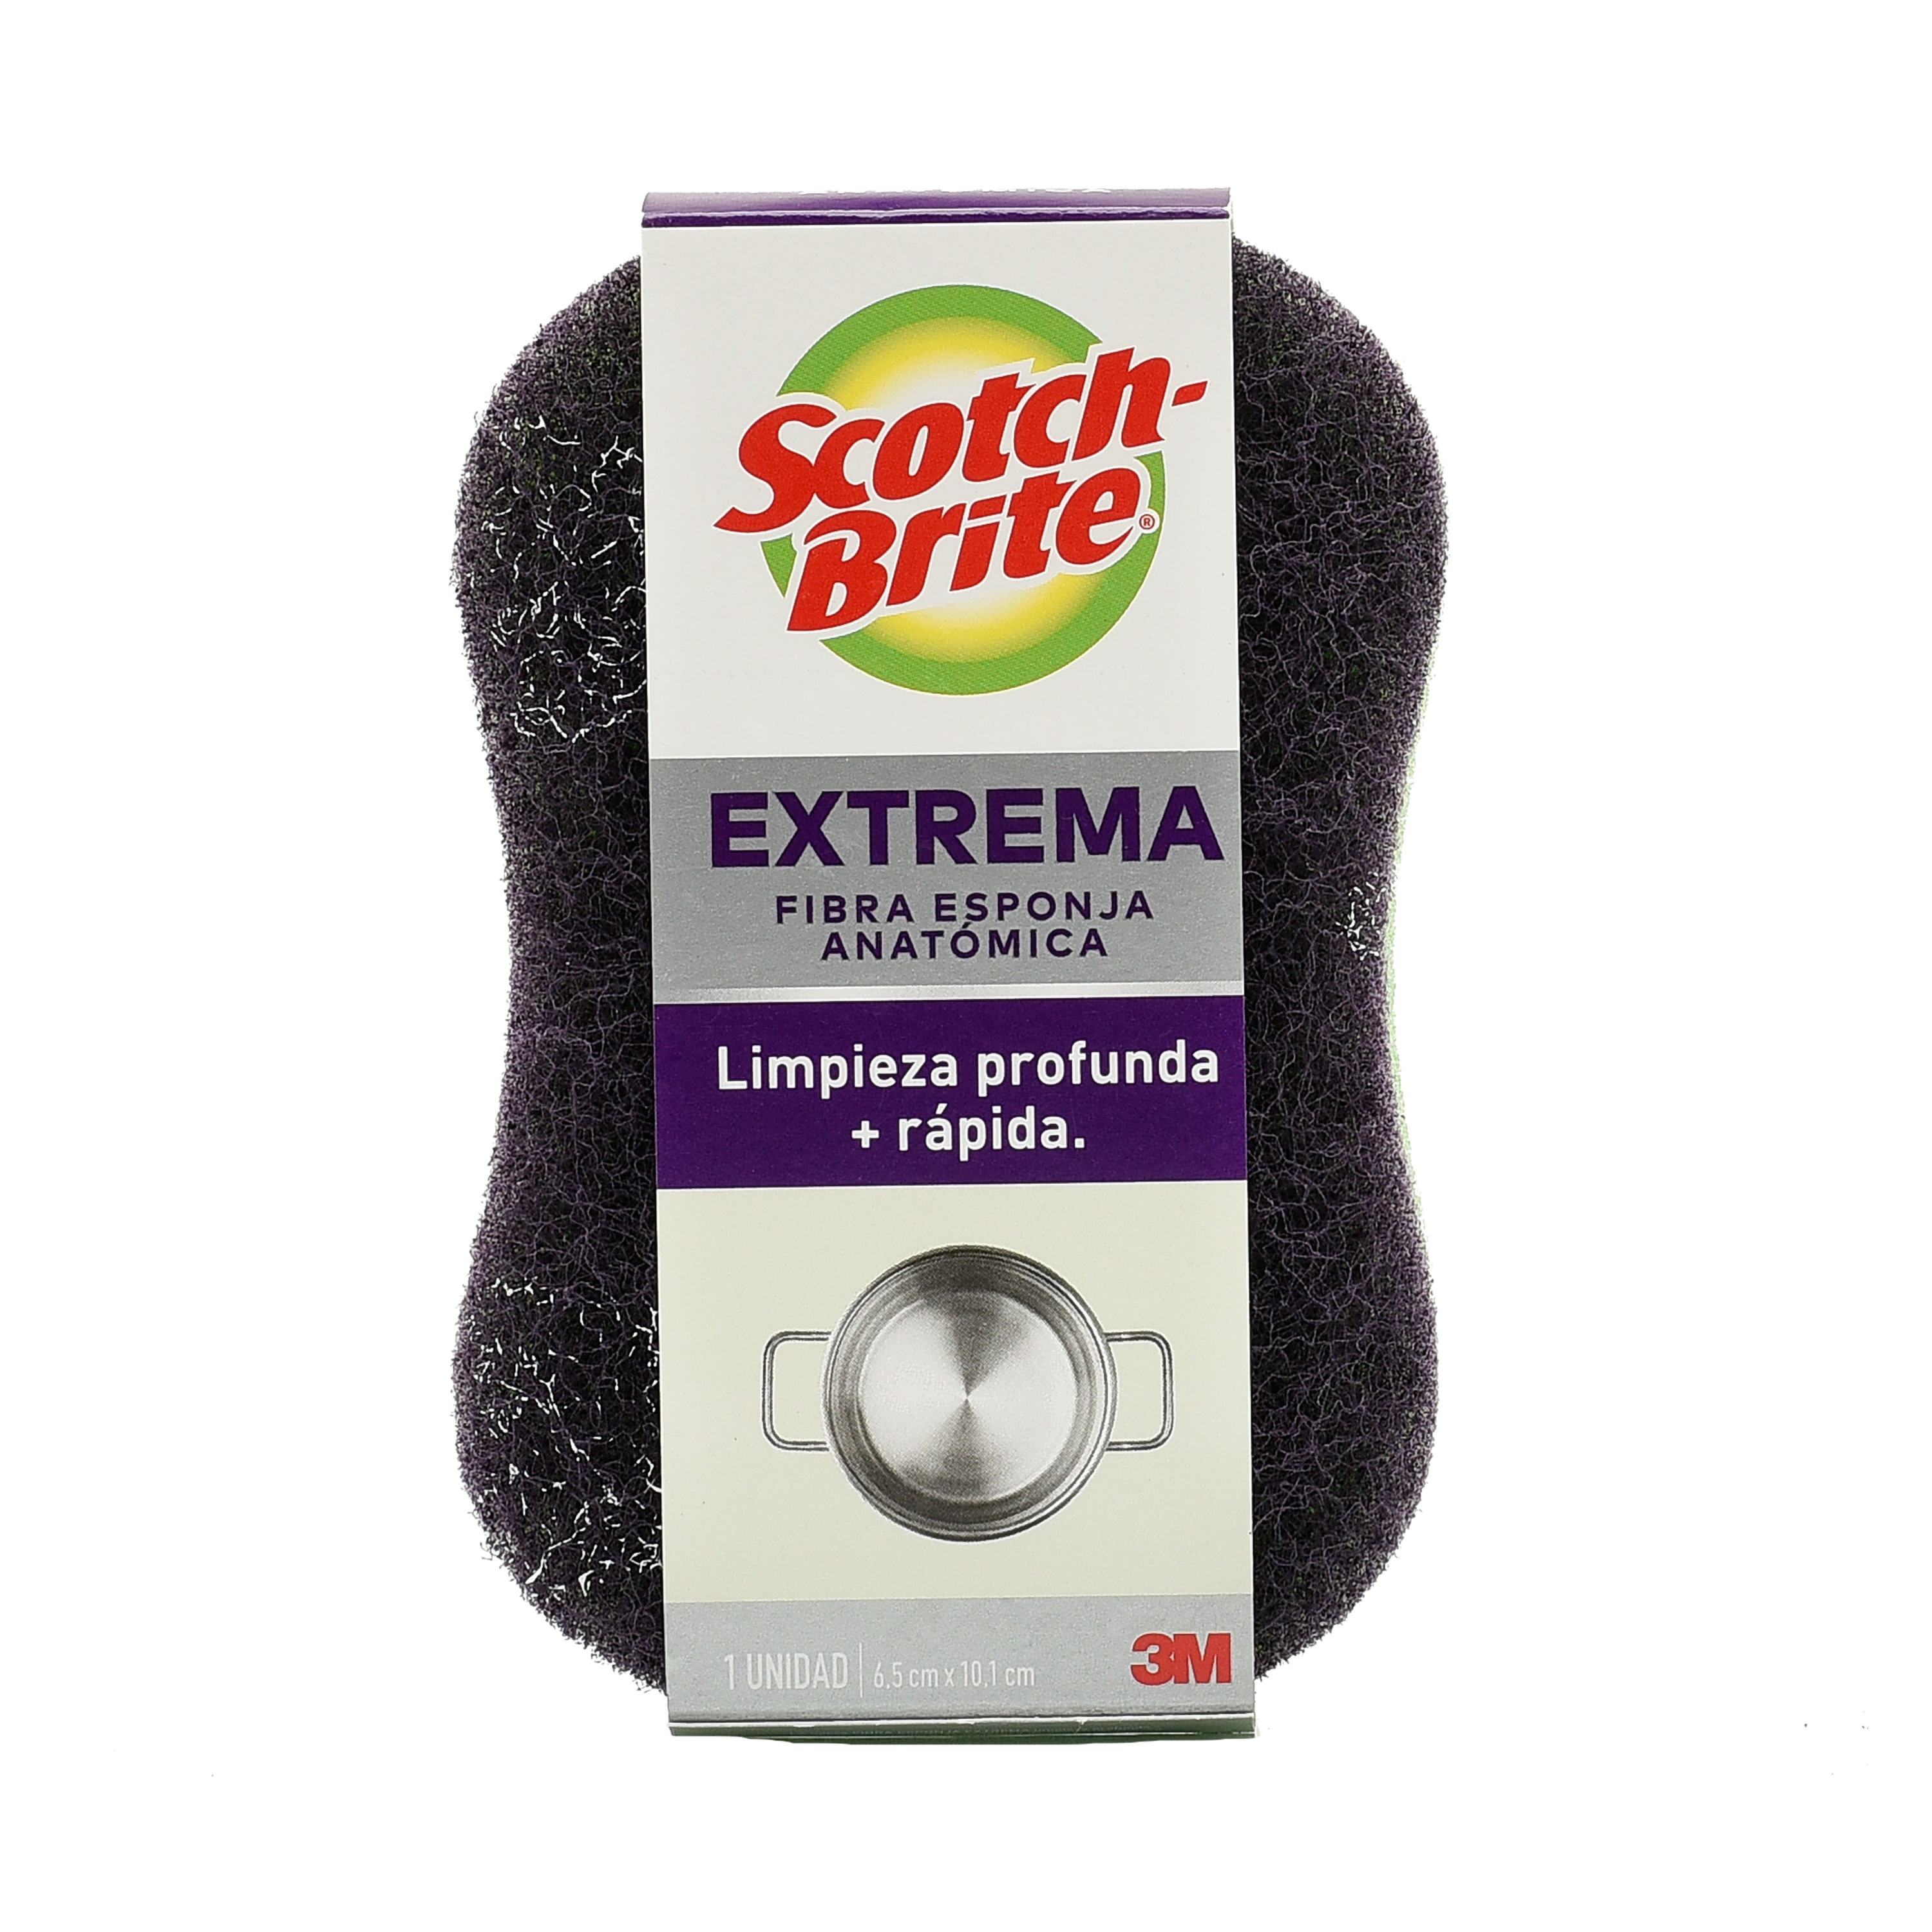 Scotch-Brite® Esponja limpieza delicada cero rayas cocina 1 und